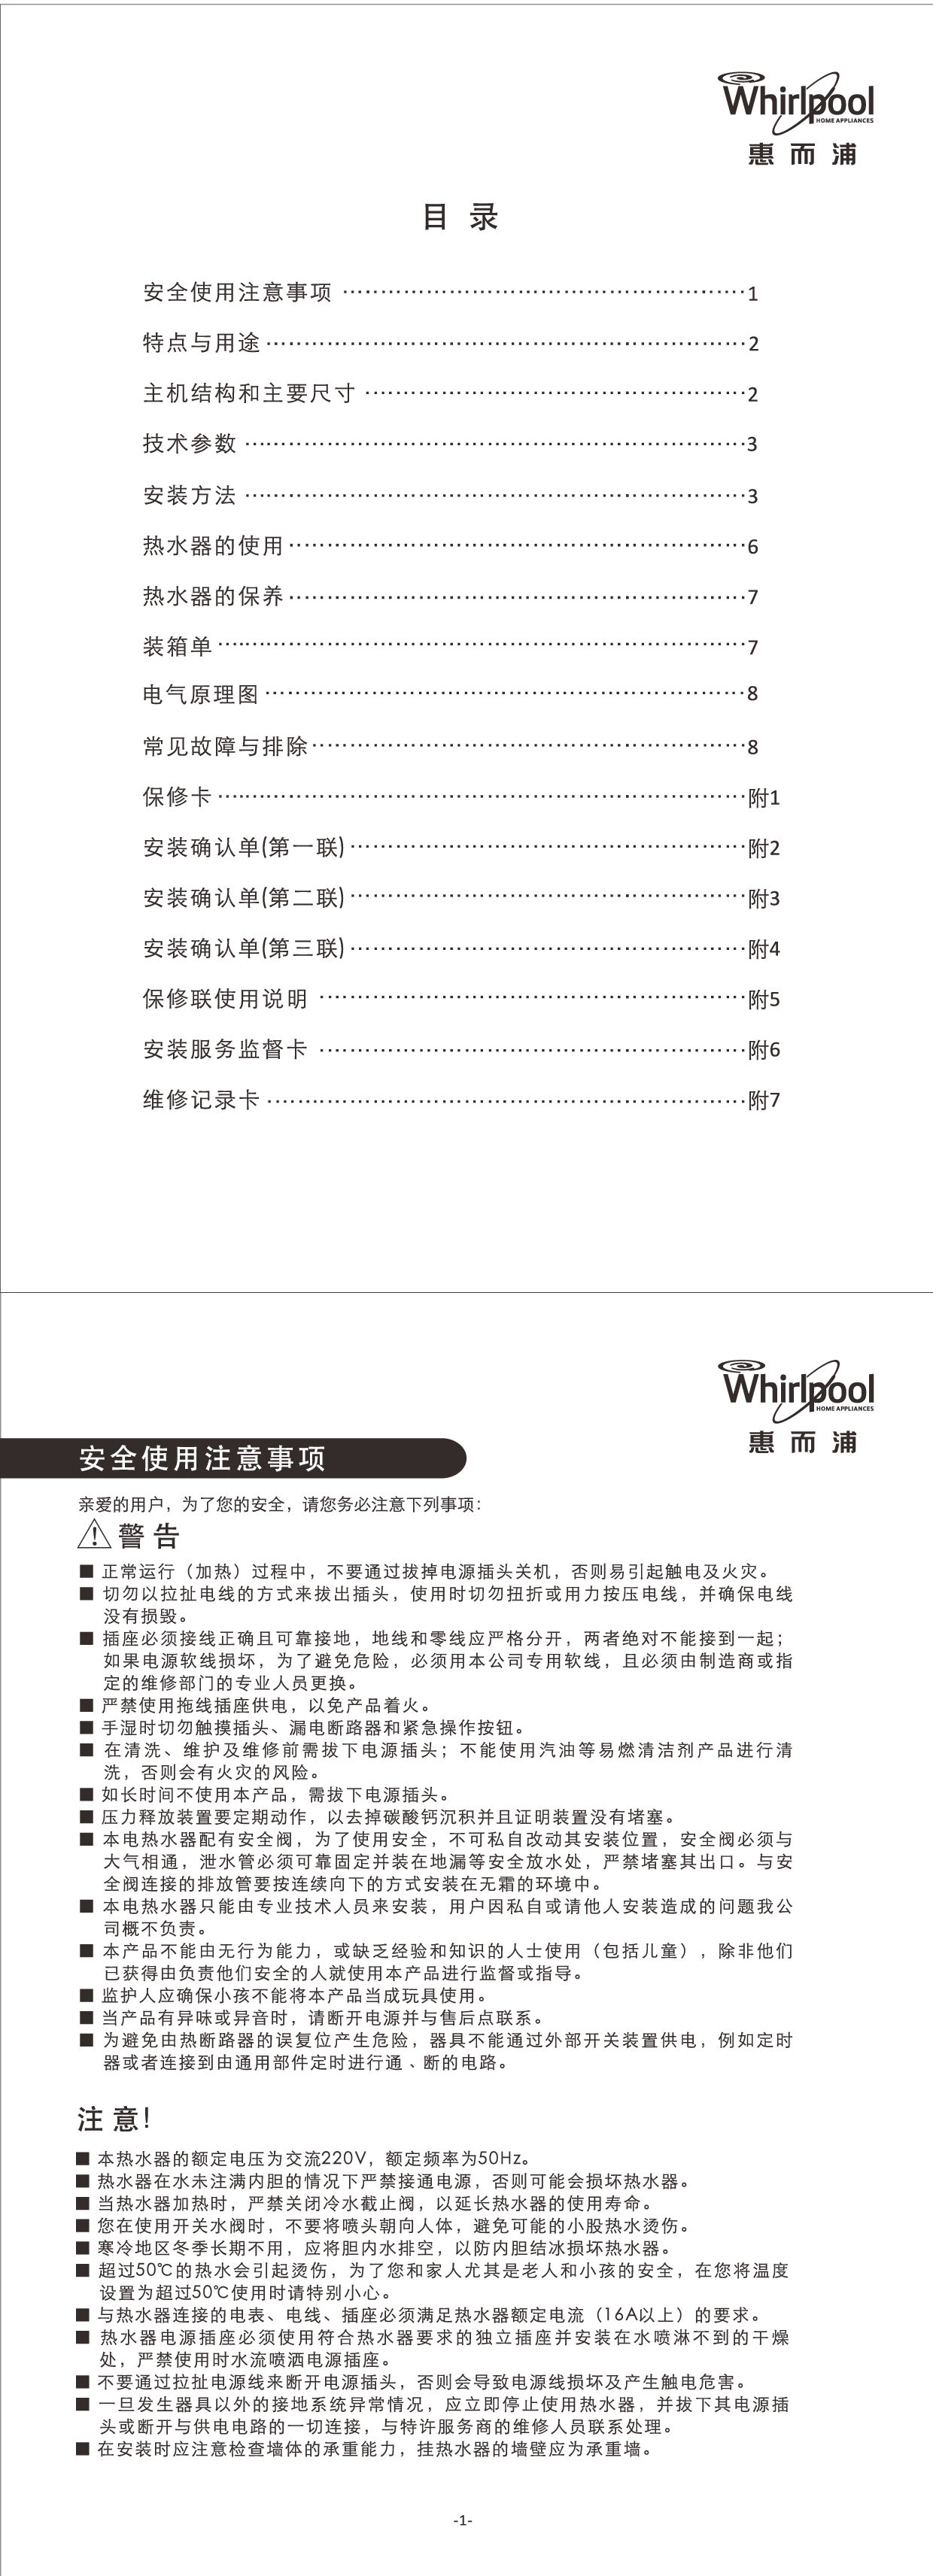 惠而浦 Whirlpool ESH-50EL 安装使用说明书 第1页